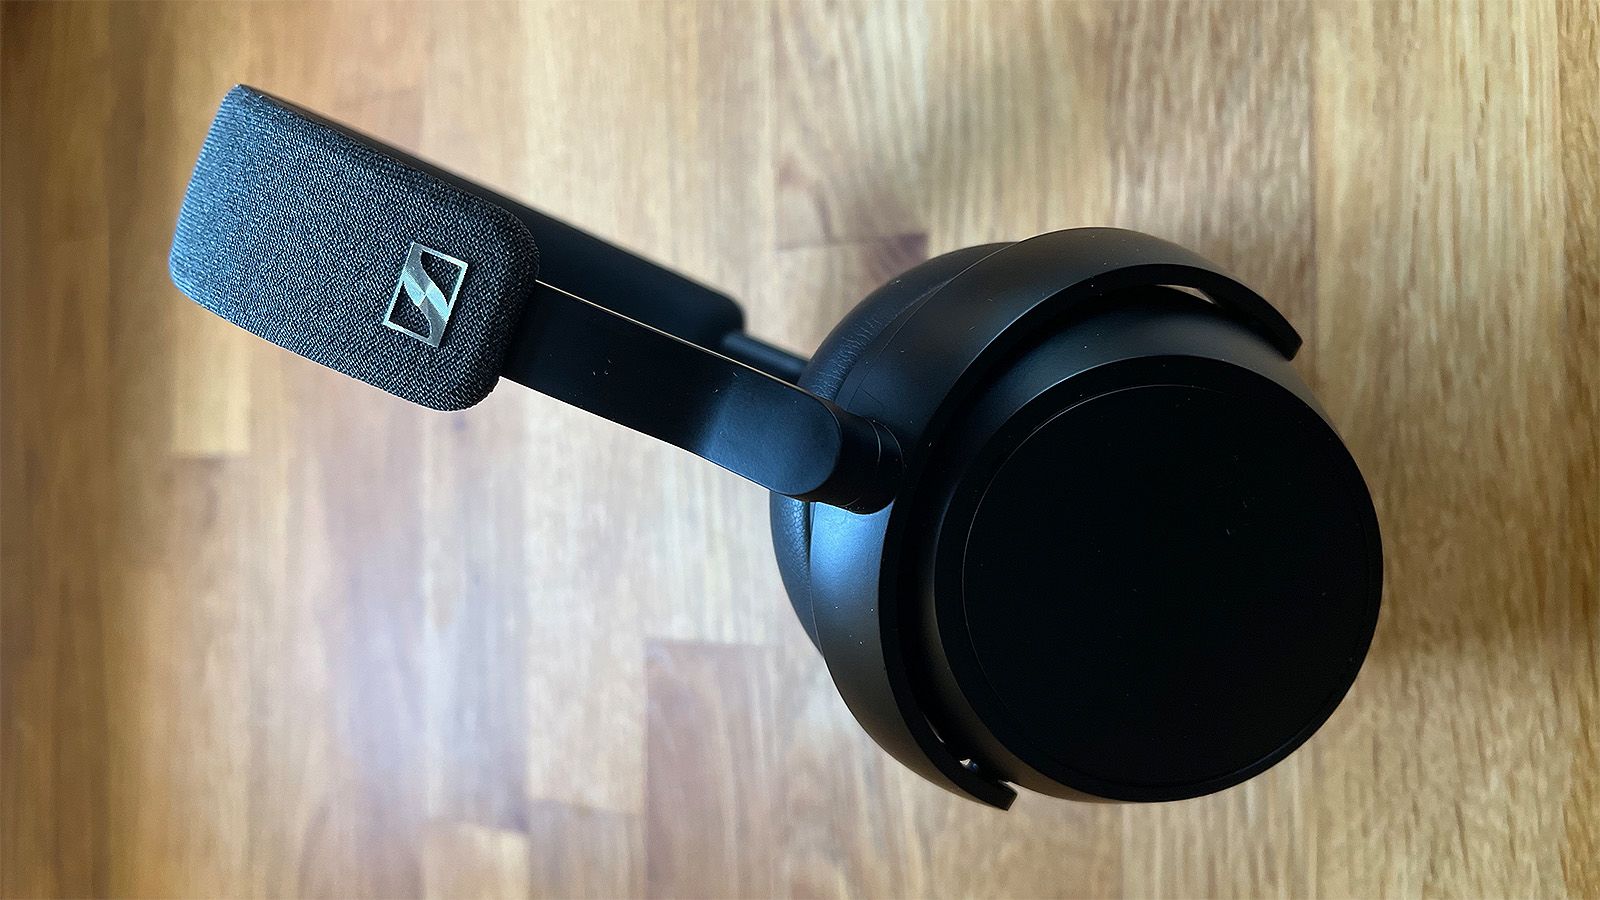 Sennheiser MOMENTUM 4 Noise-Canceling Wireless Headphones